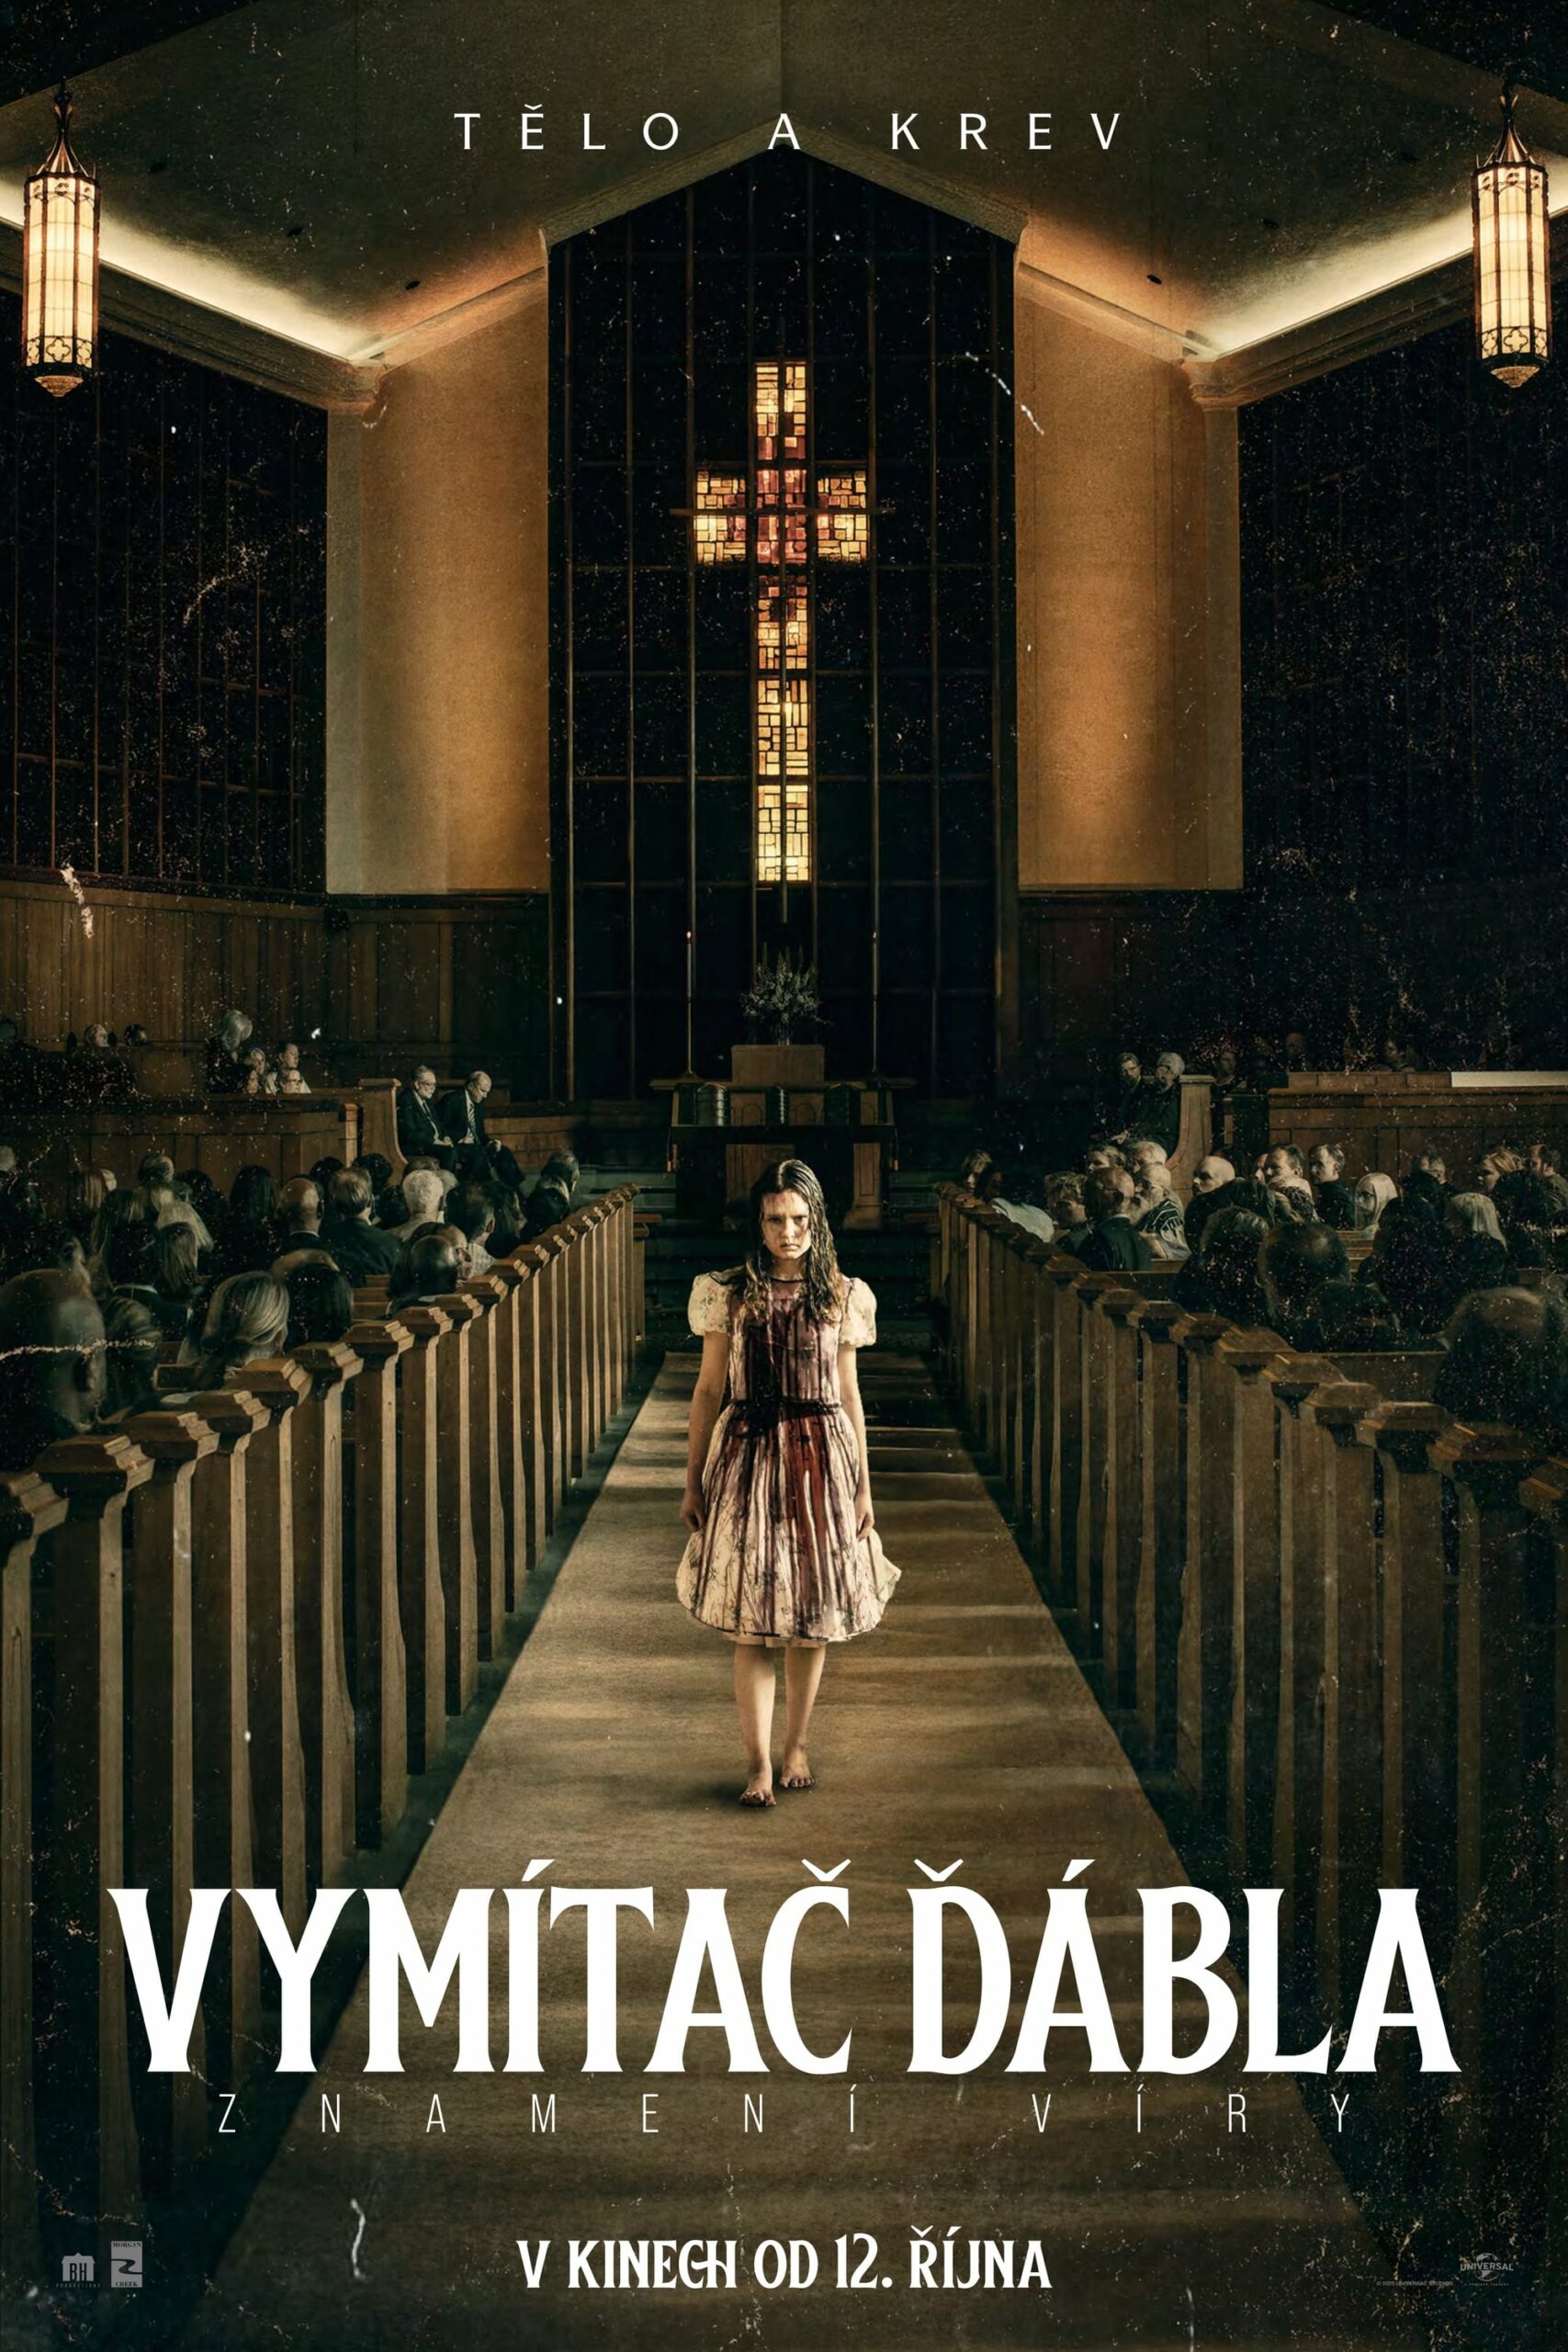 Plakát pro film “Vymítač ďábla: Znamení víry”